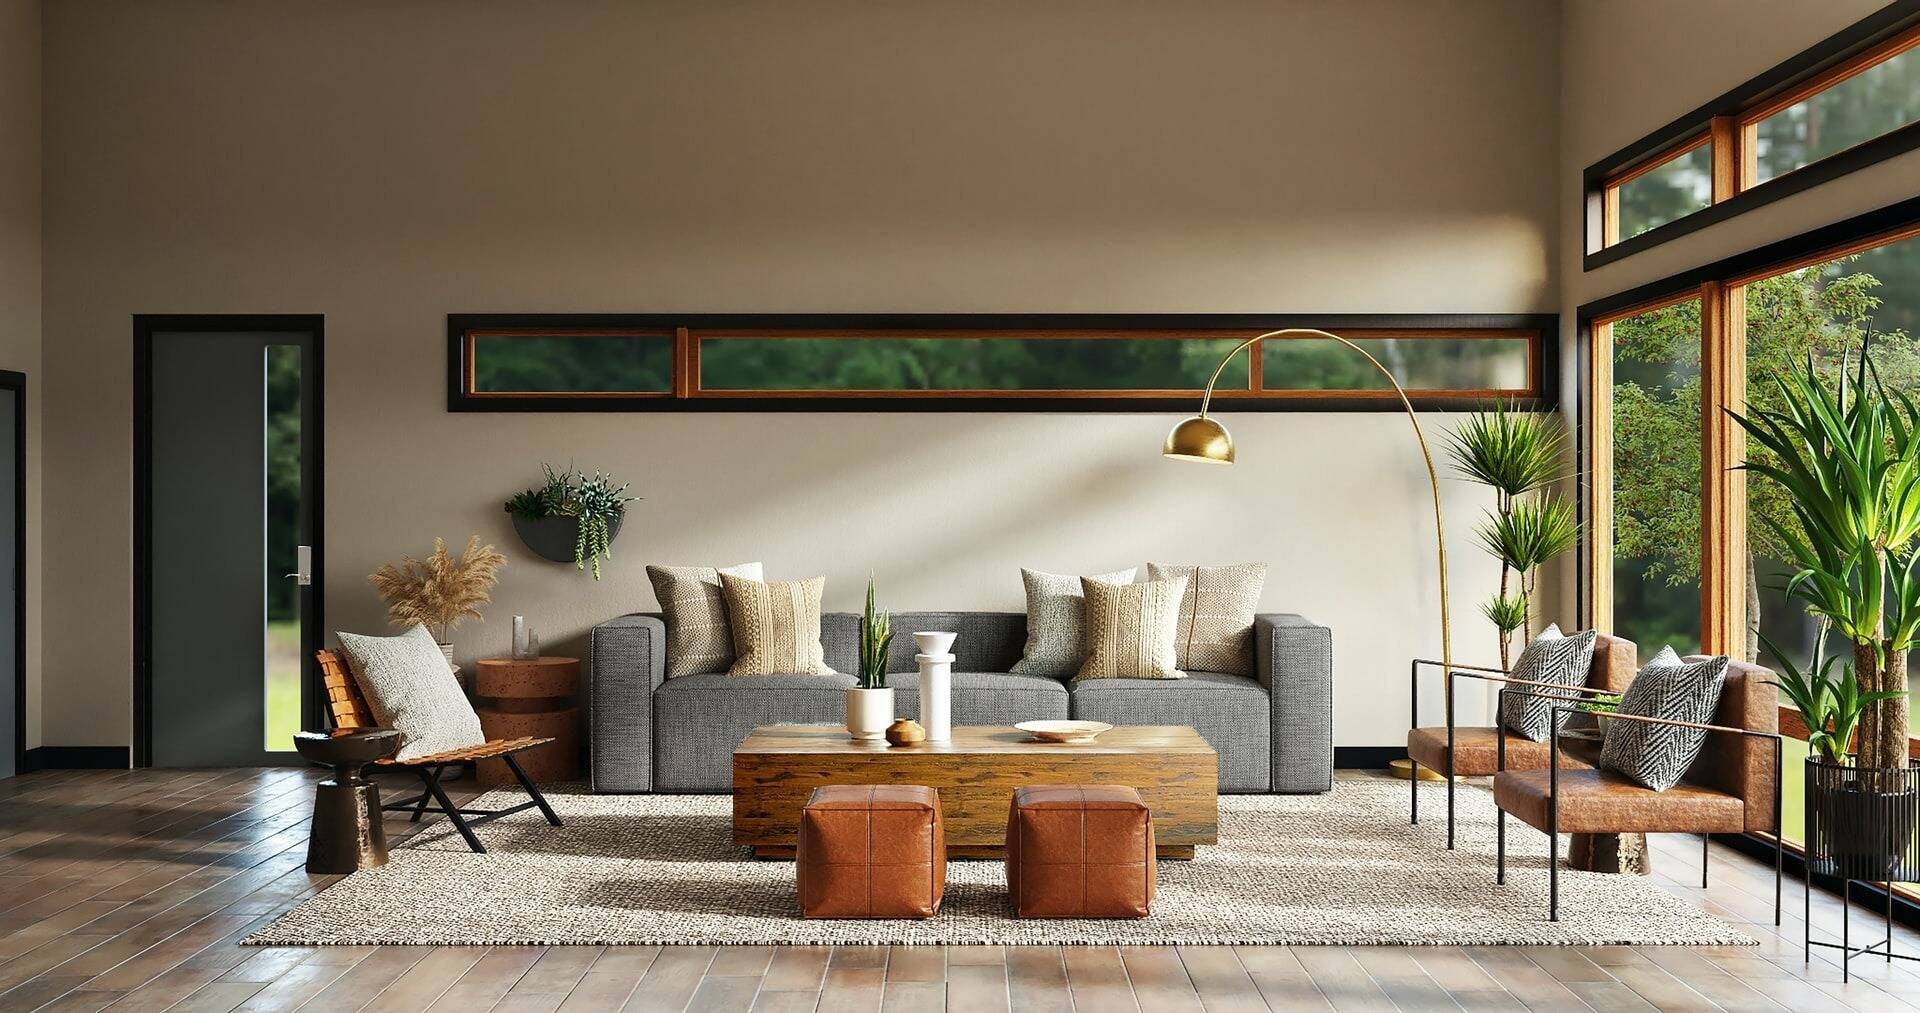 
Ghế sofa trơn, có màu sắc trung tính sẽ là lựa chọn hợp thời và bền bỉ hơn
